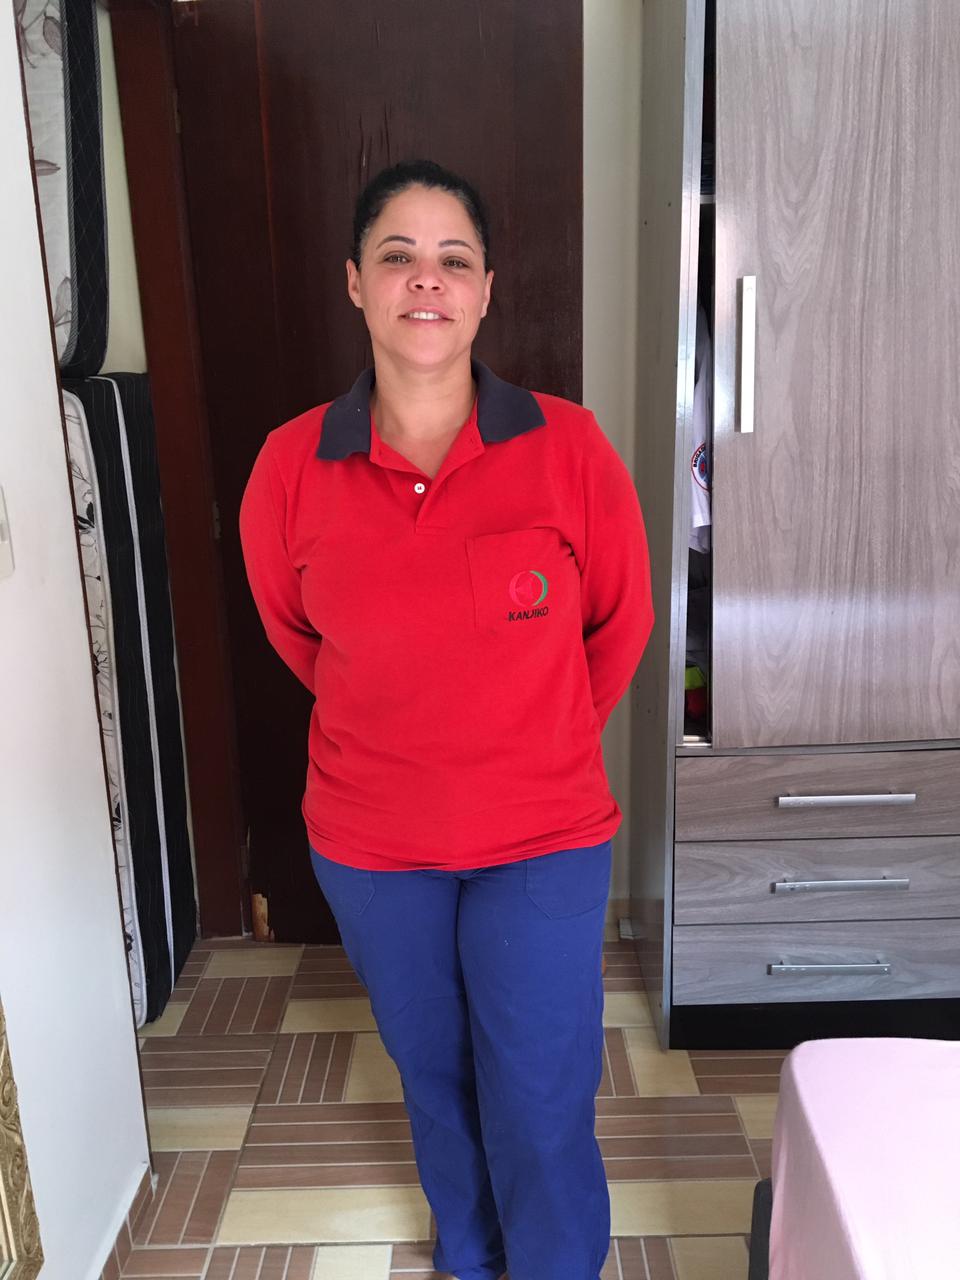 Edina trabalha como empilhadeirista na Kanjiko do Brasil há dois anos e meio